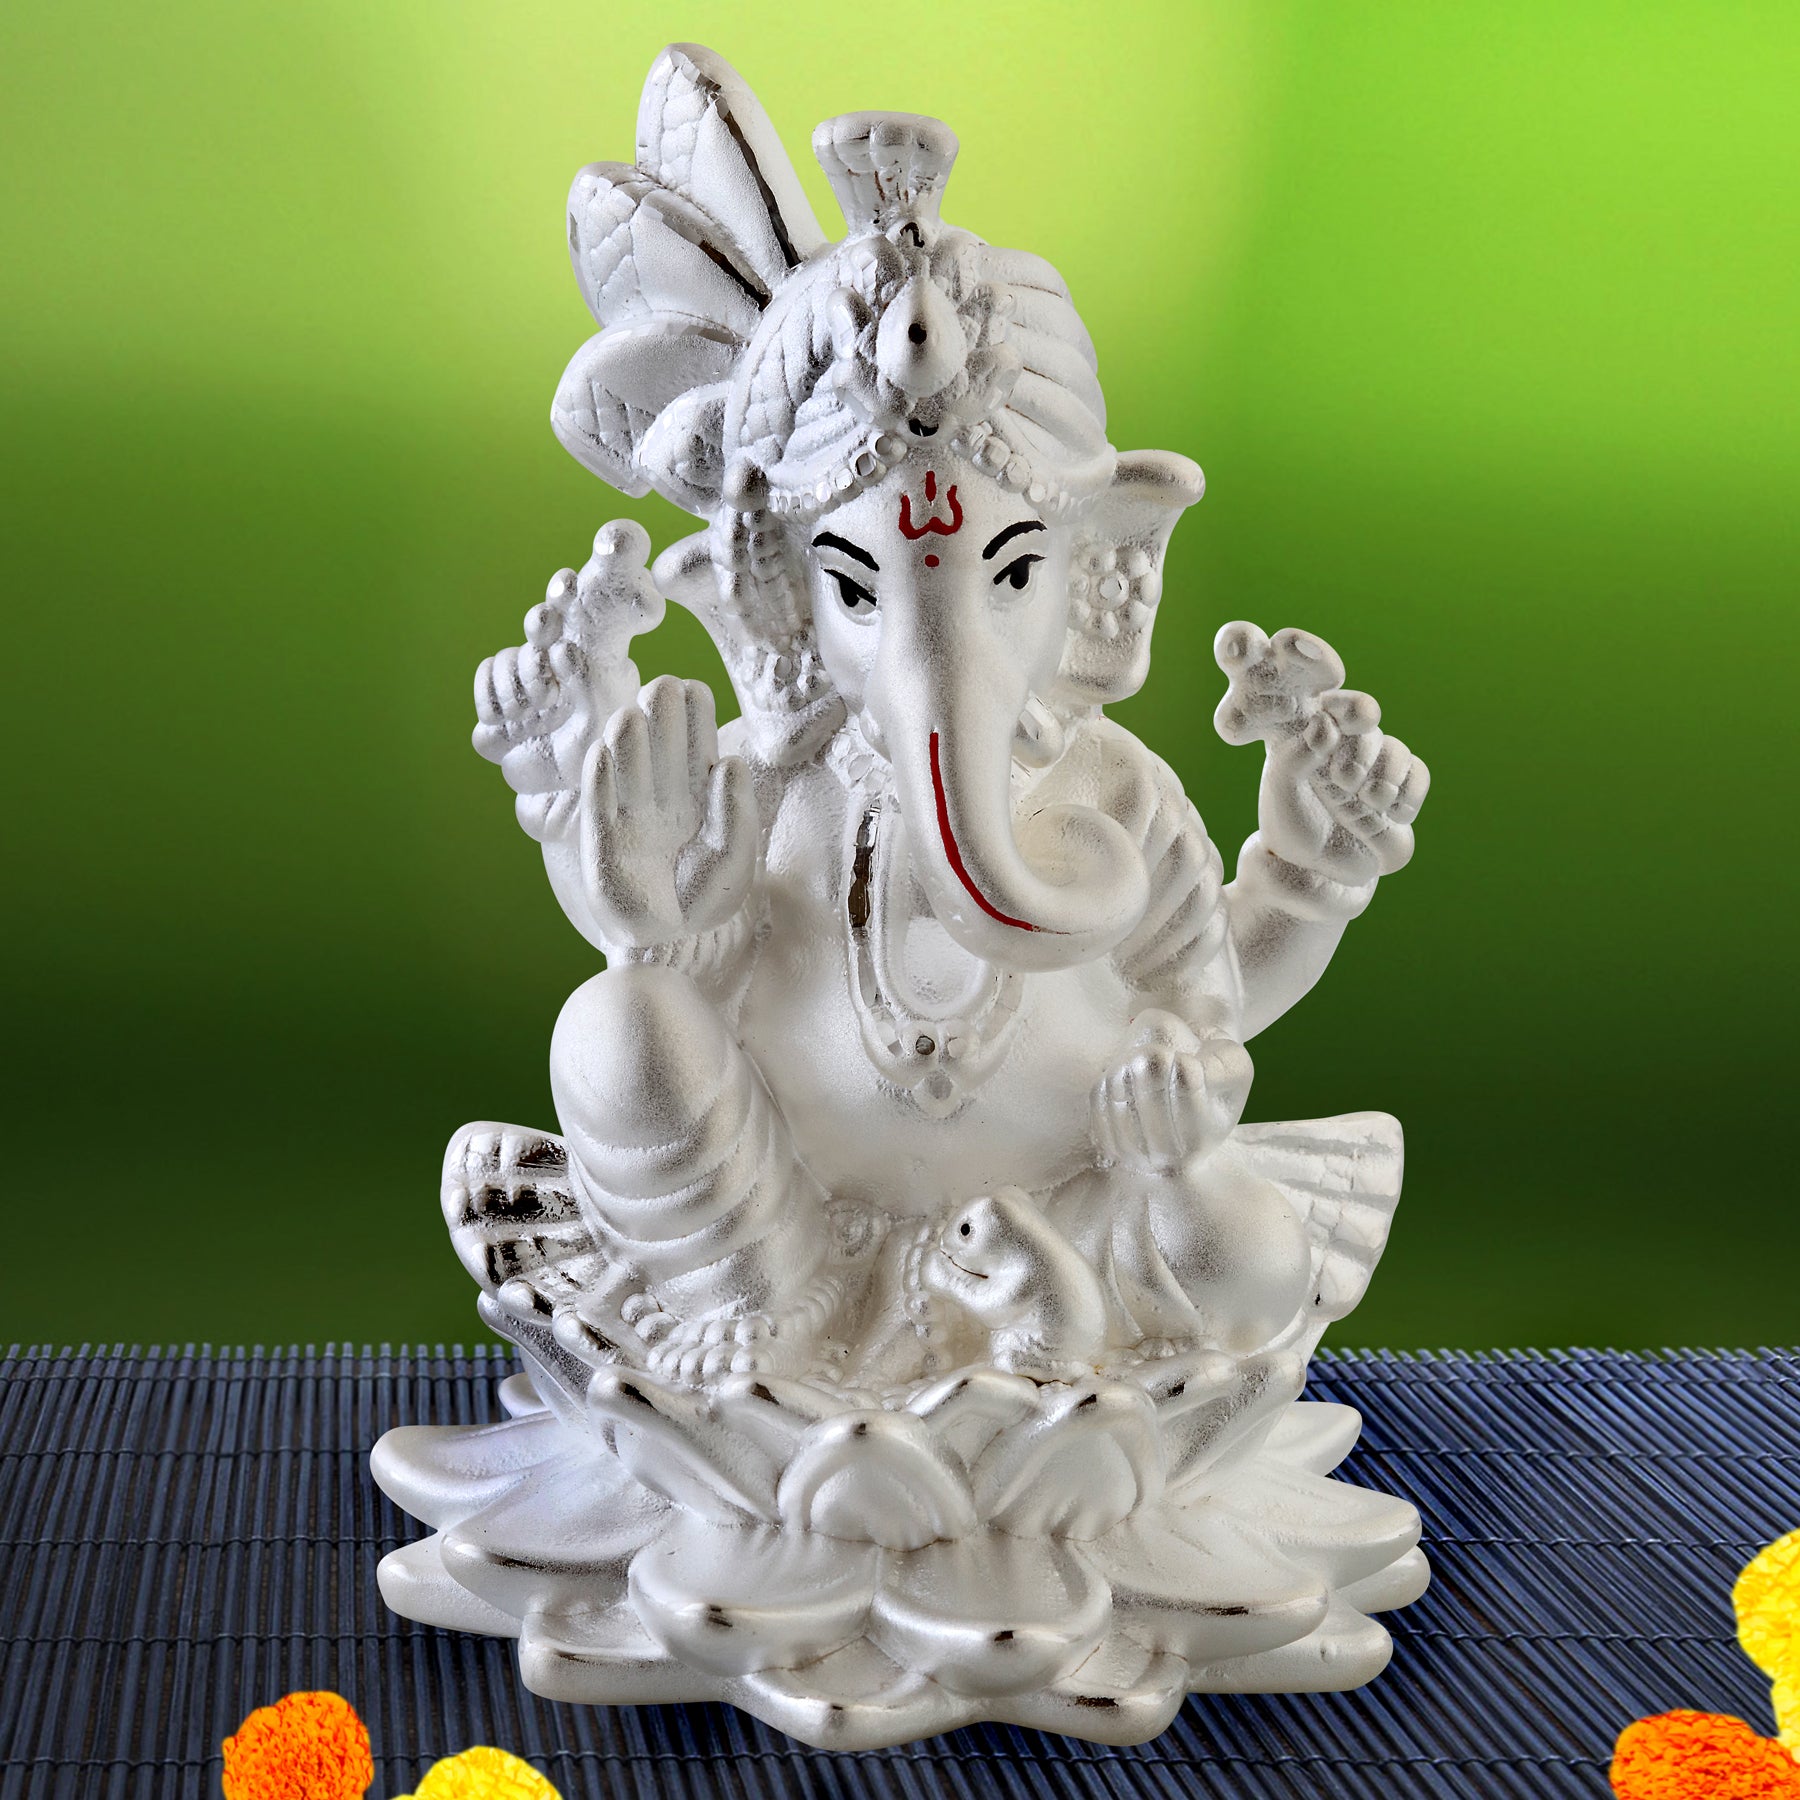 925 Fine Silver Ganesh Laxmi Idols, Hindu Goddess Laxmi Statue, Ganesh  Statue, Best Price Silver God Idols for Gift, NET WT 62.50 GMS - Etsy